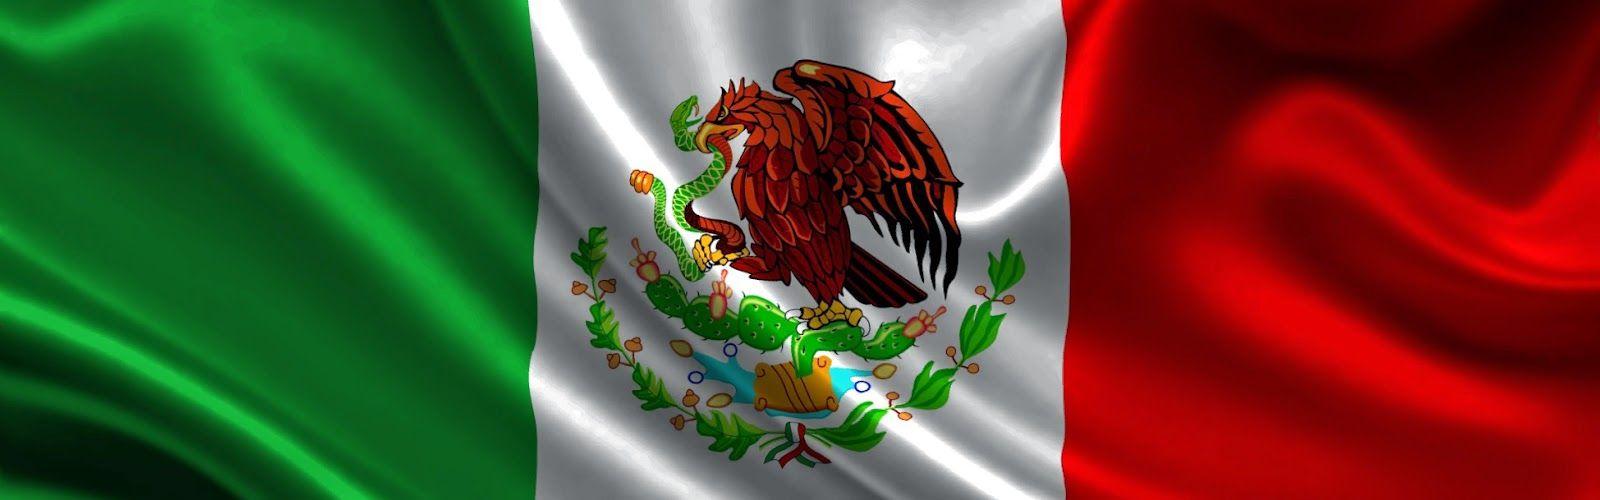 mexico flag wallpaper